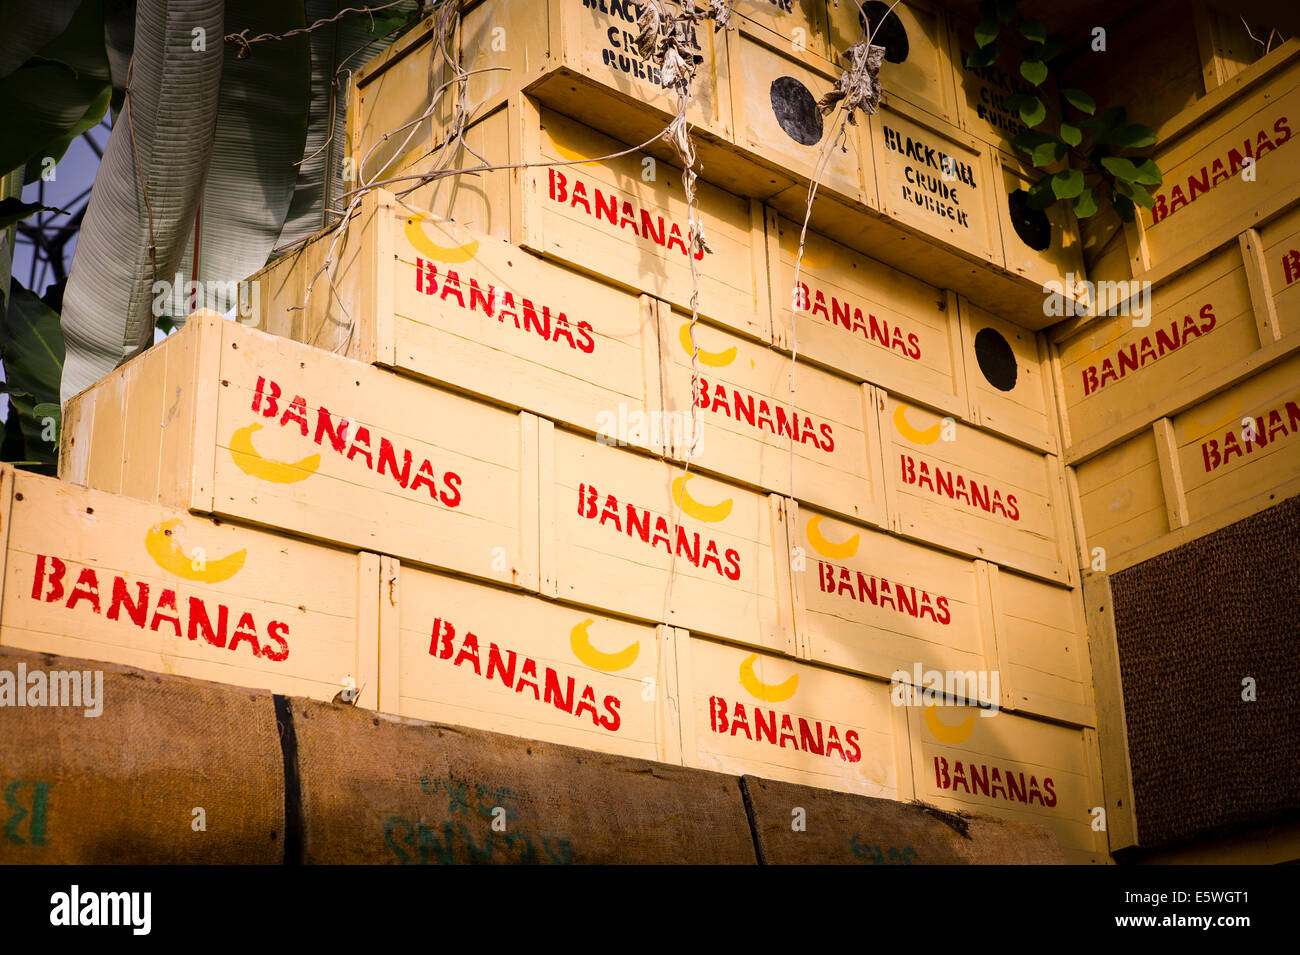 Boîtes de bananes empilées pour illustrer la valeur économique des plantes d'Eden Project UK Banque D'Images